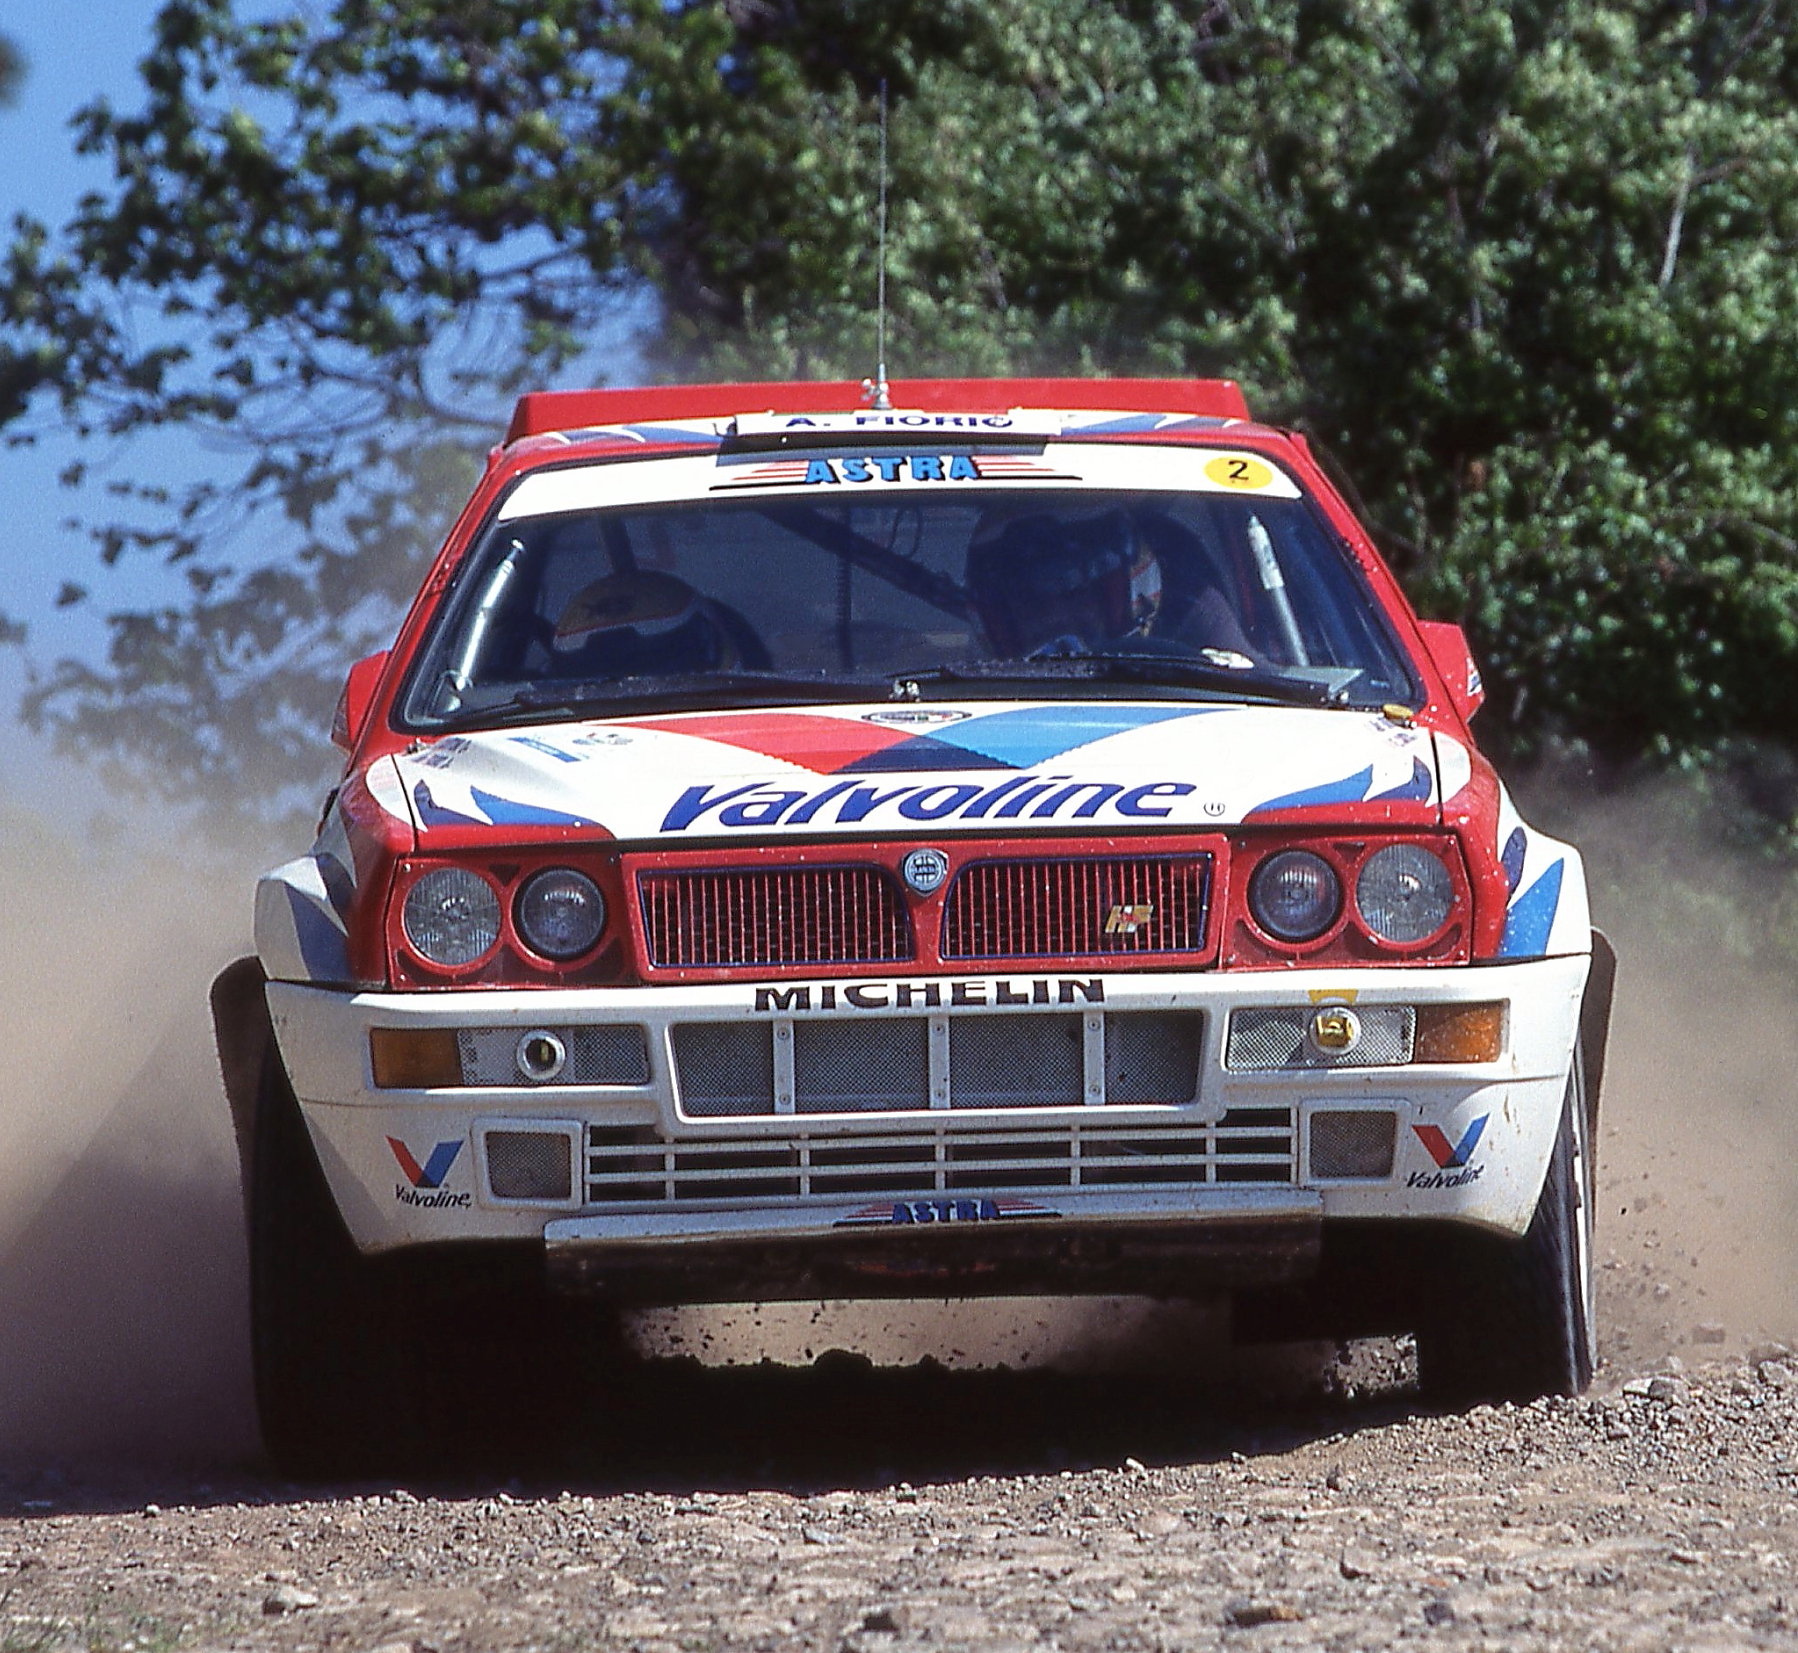 "Deltona" fotografata ad un Rally negli anni 90......